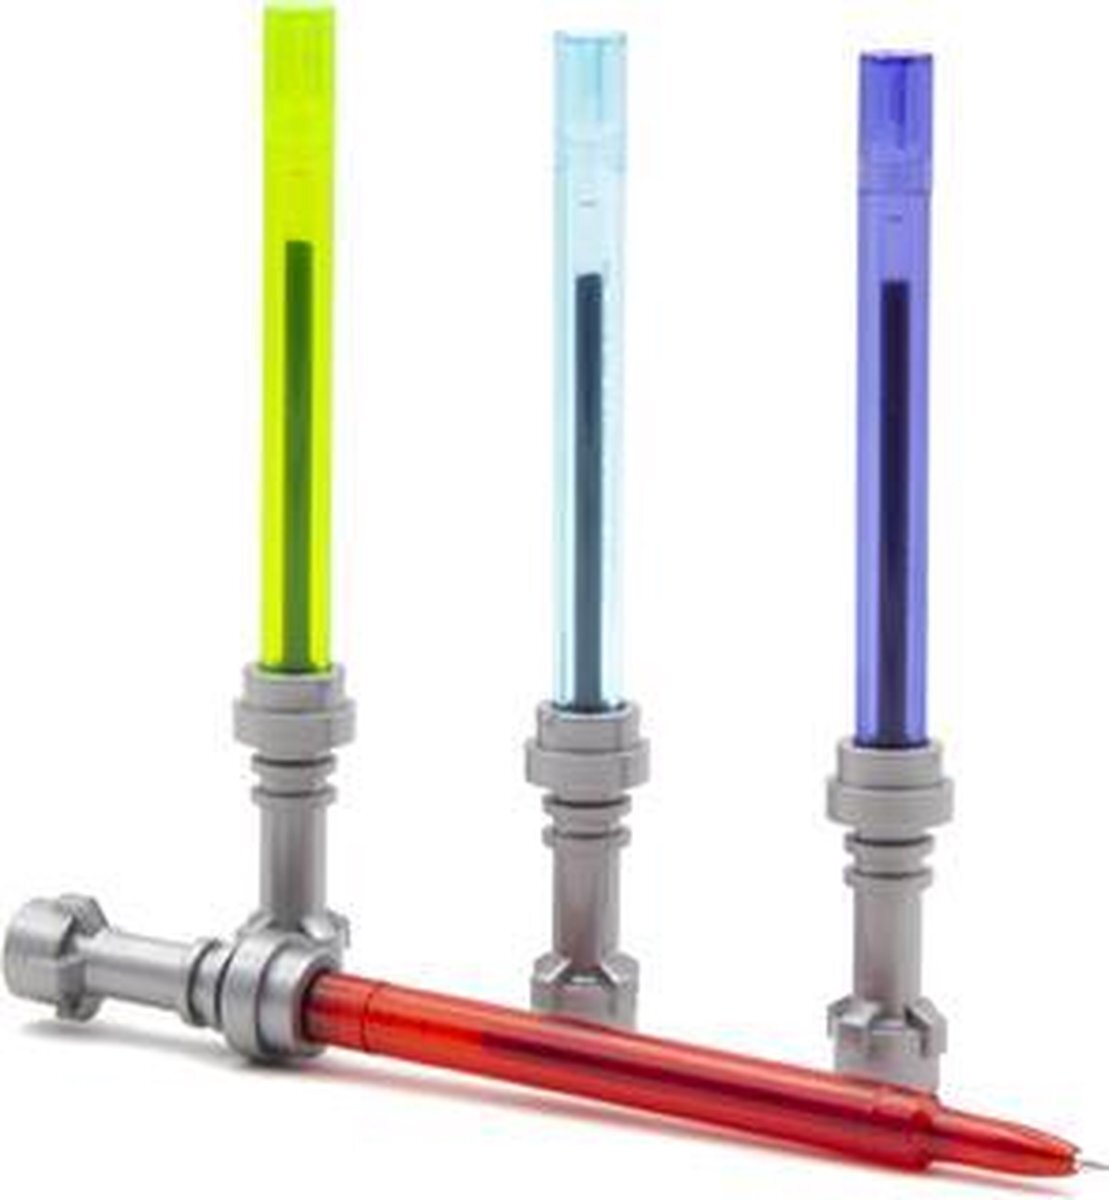 lego Star Wars - Lightsaber Gel Pens Set